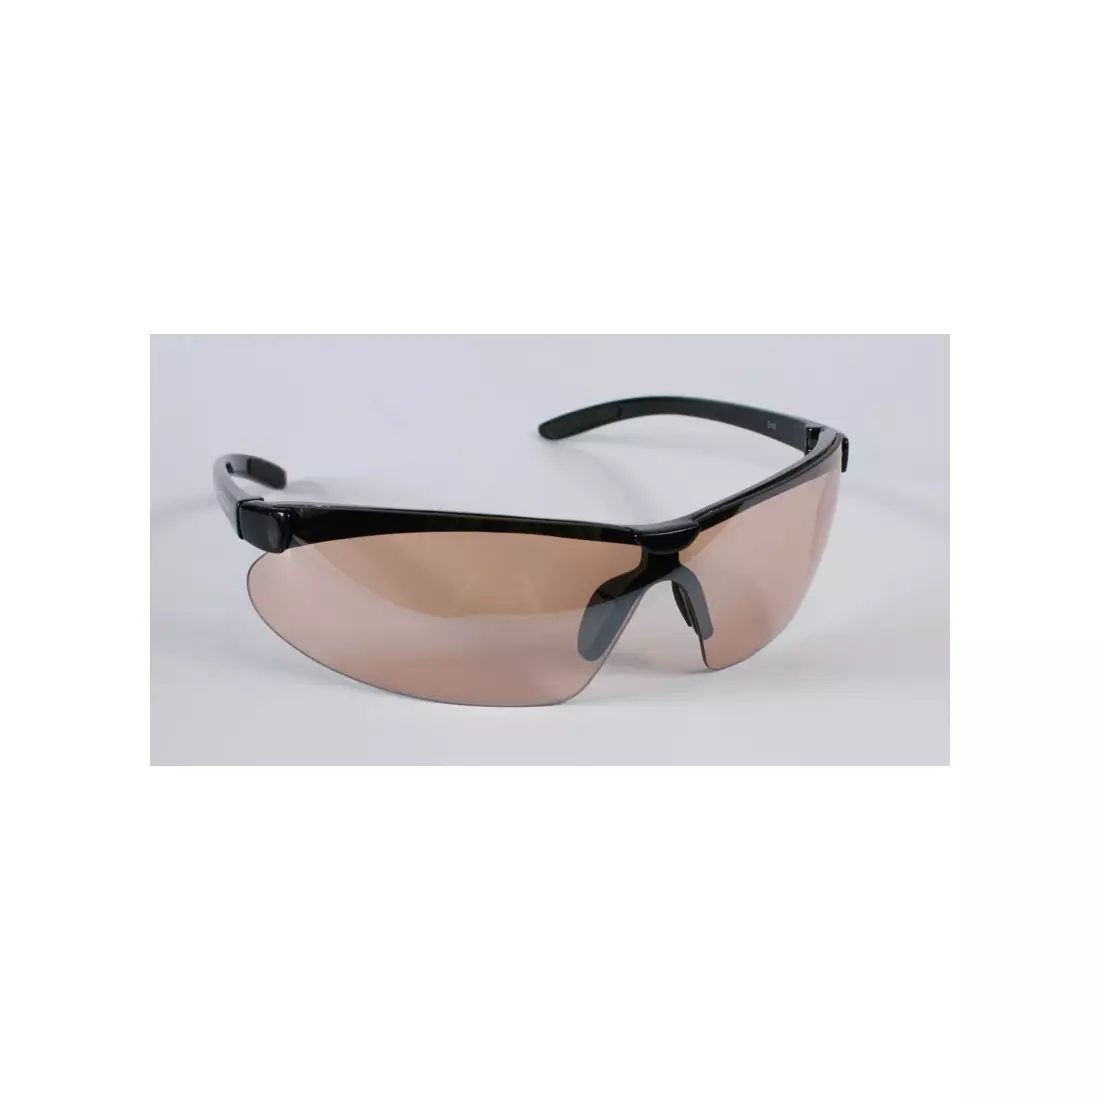 ALPINA DRIFT Sportbrille - Farbe: Schwarz